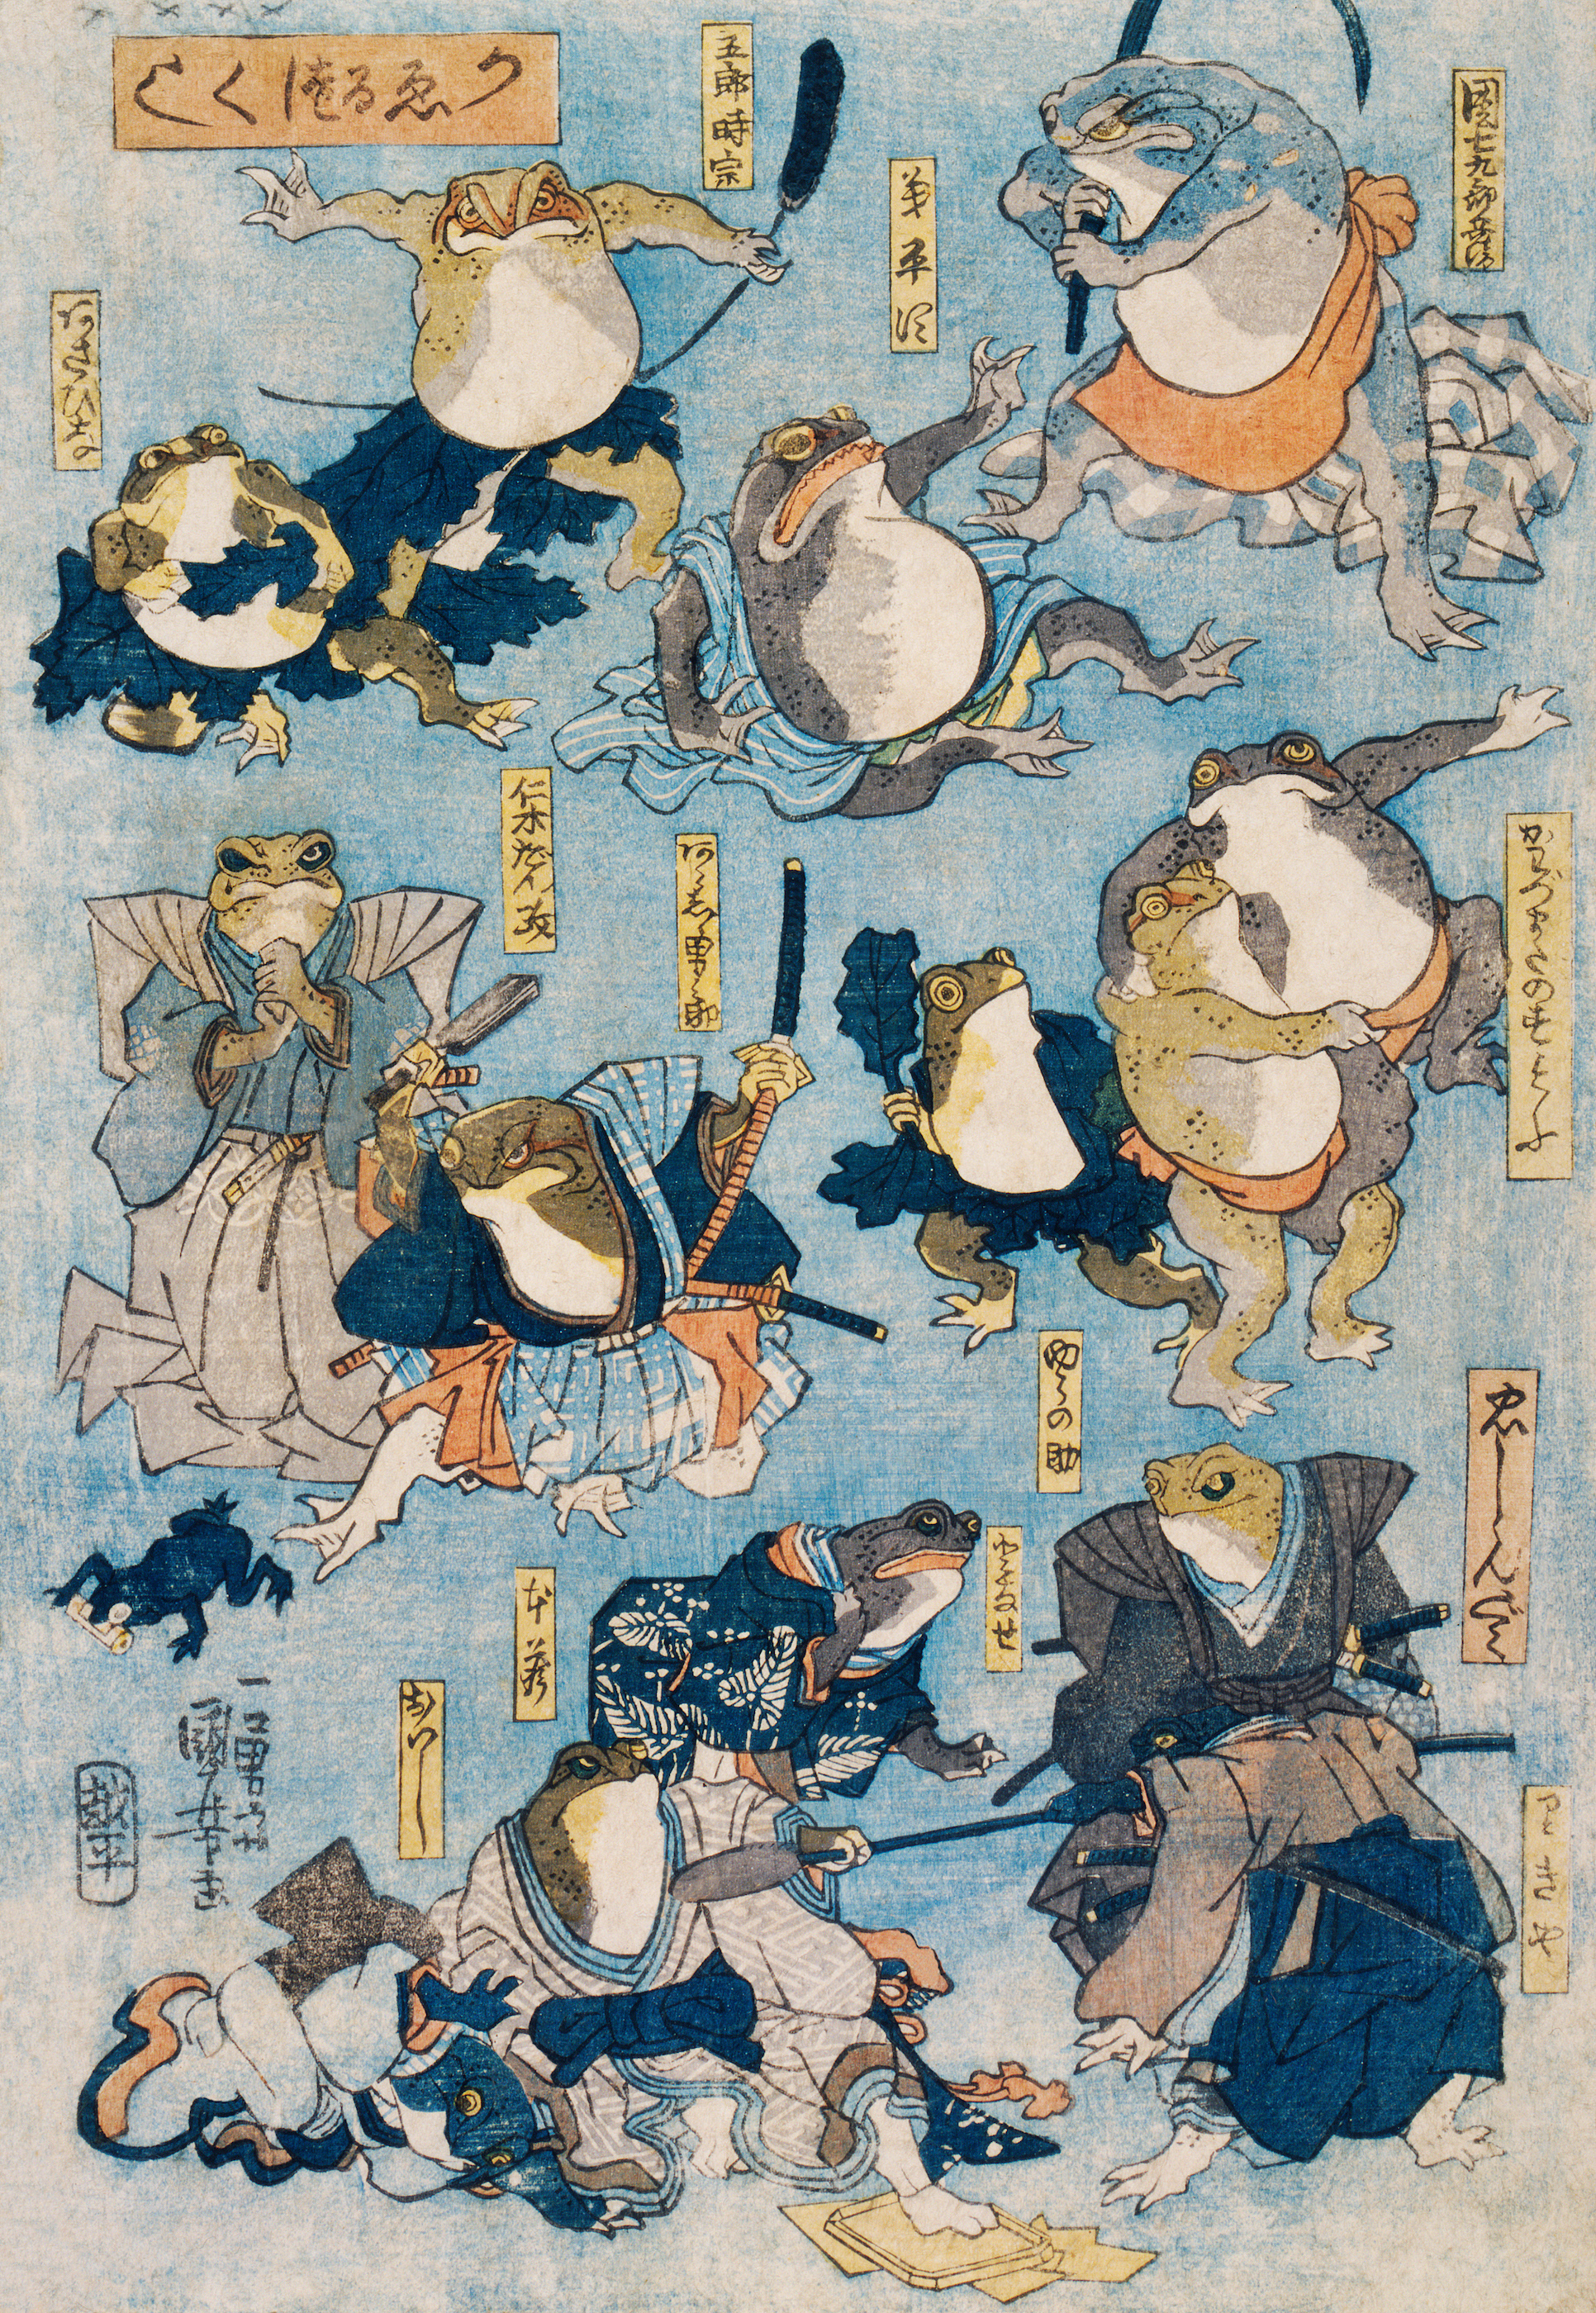 Słynni bohaterowie sceny kabuki grani przez żaby by Utagawa Kuniyoshi - ok. 1875 